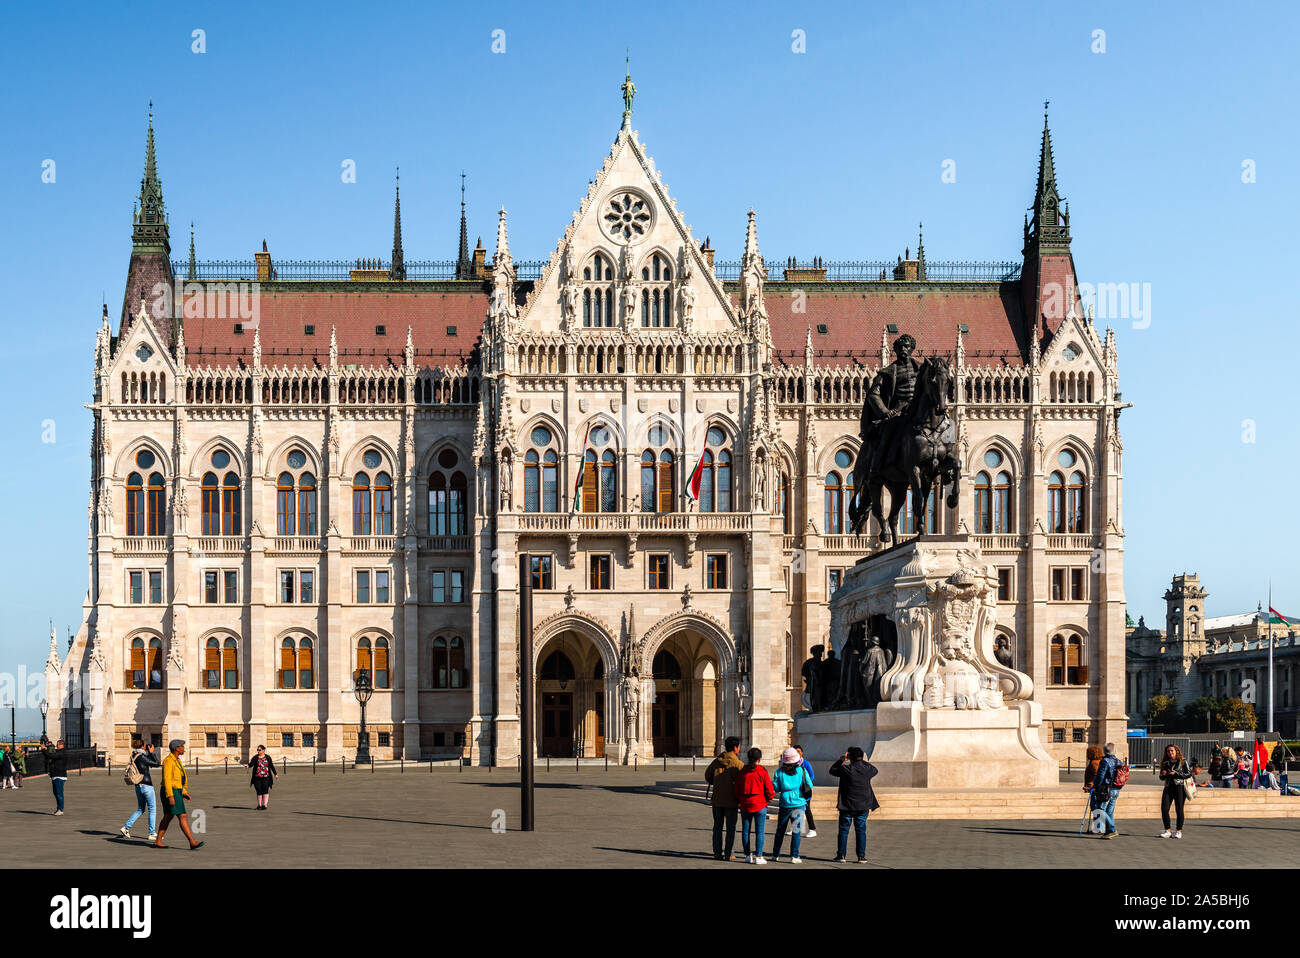 Vue sur le bâtiment du parlement hongrois, également connu comme le Parlement de Budapest, un monument remarquable de la Hongrie et une destination touristique populaire. Banque D'Images